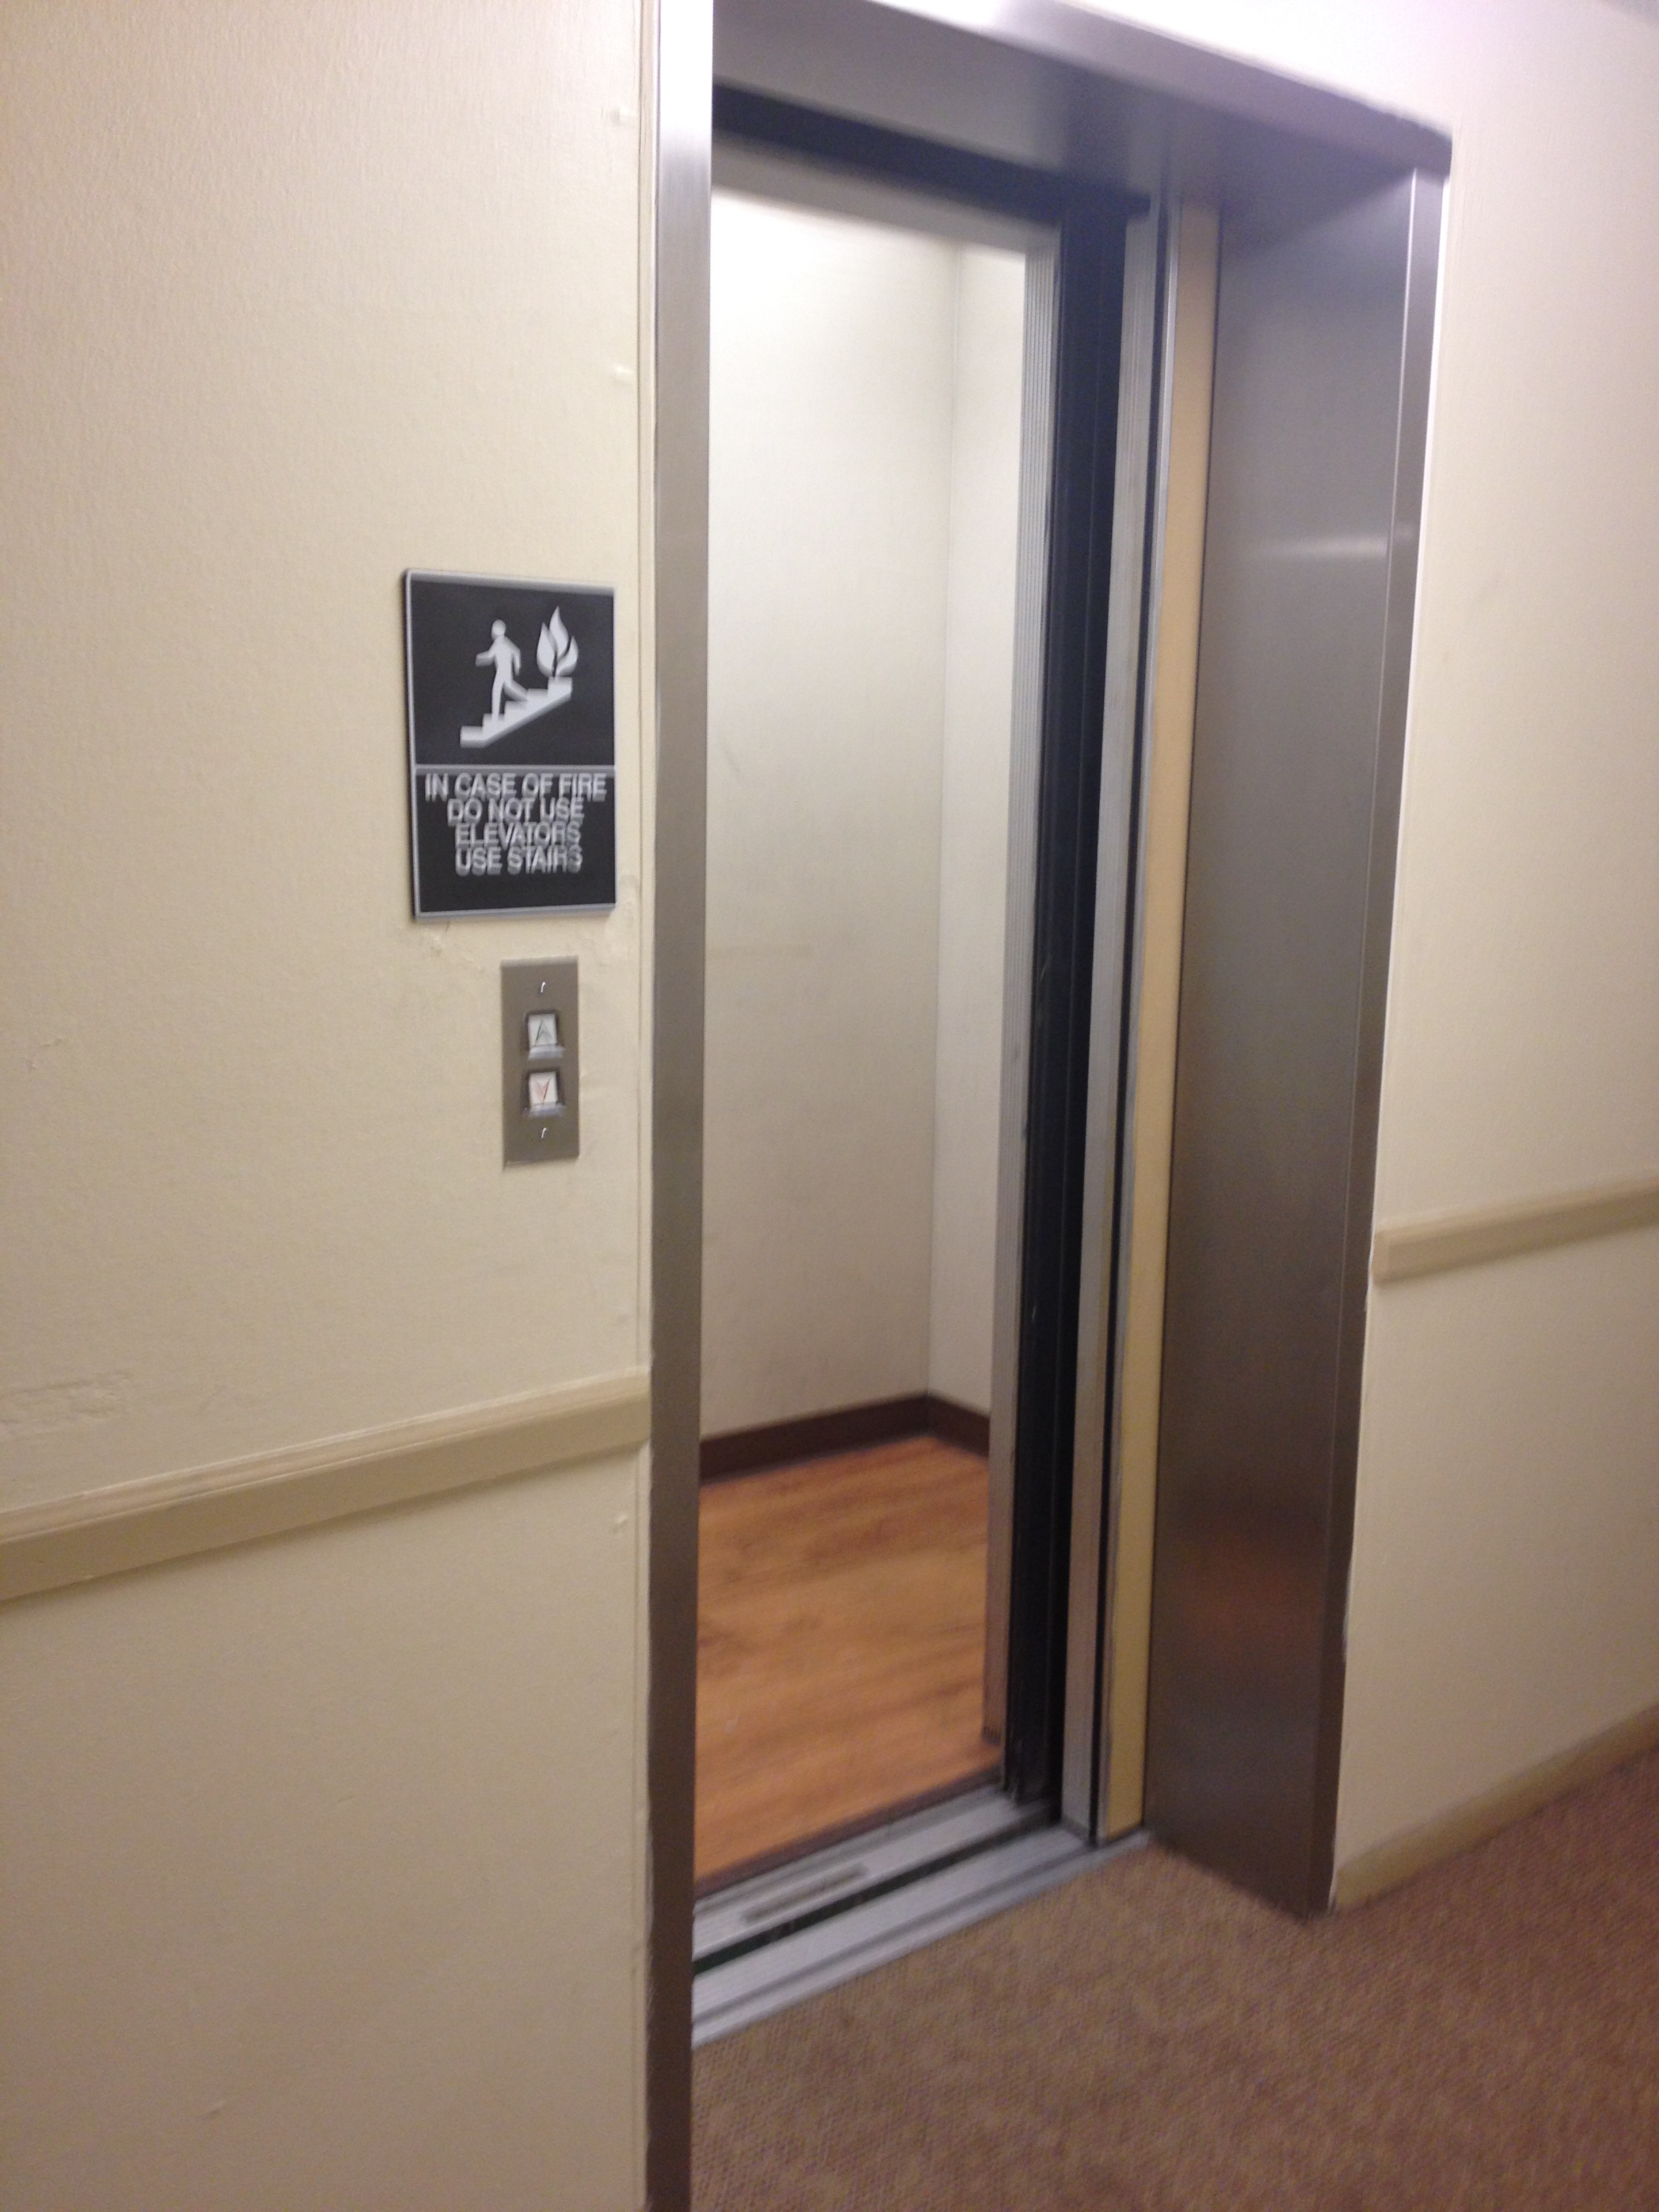 The elevator door would often get stuck in the open position.